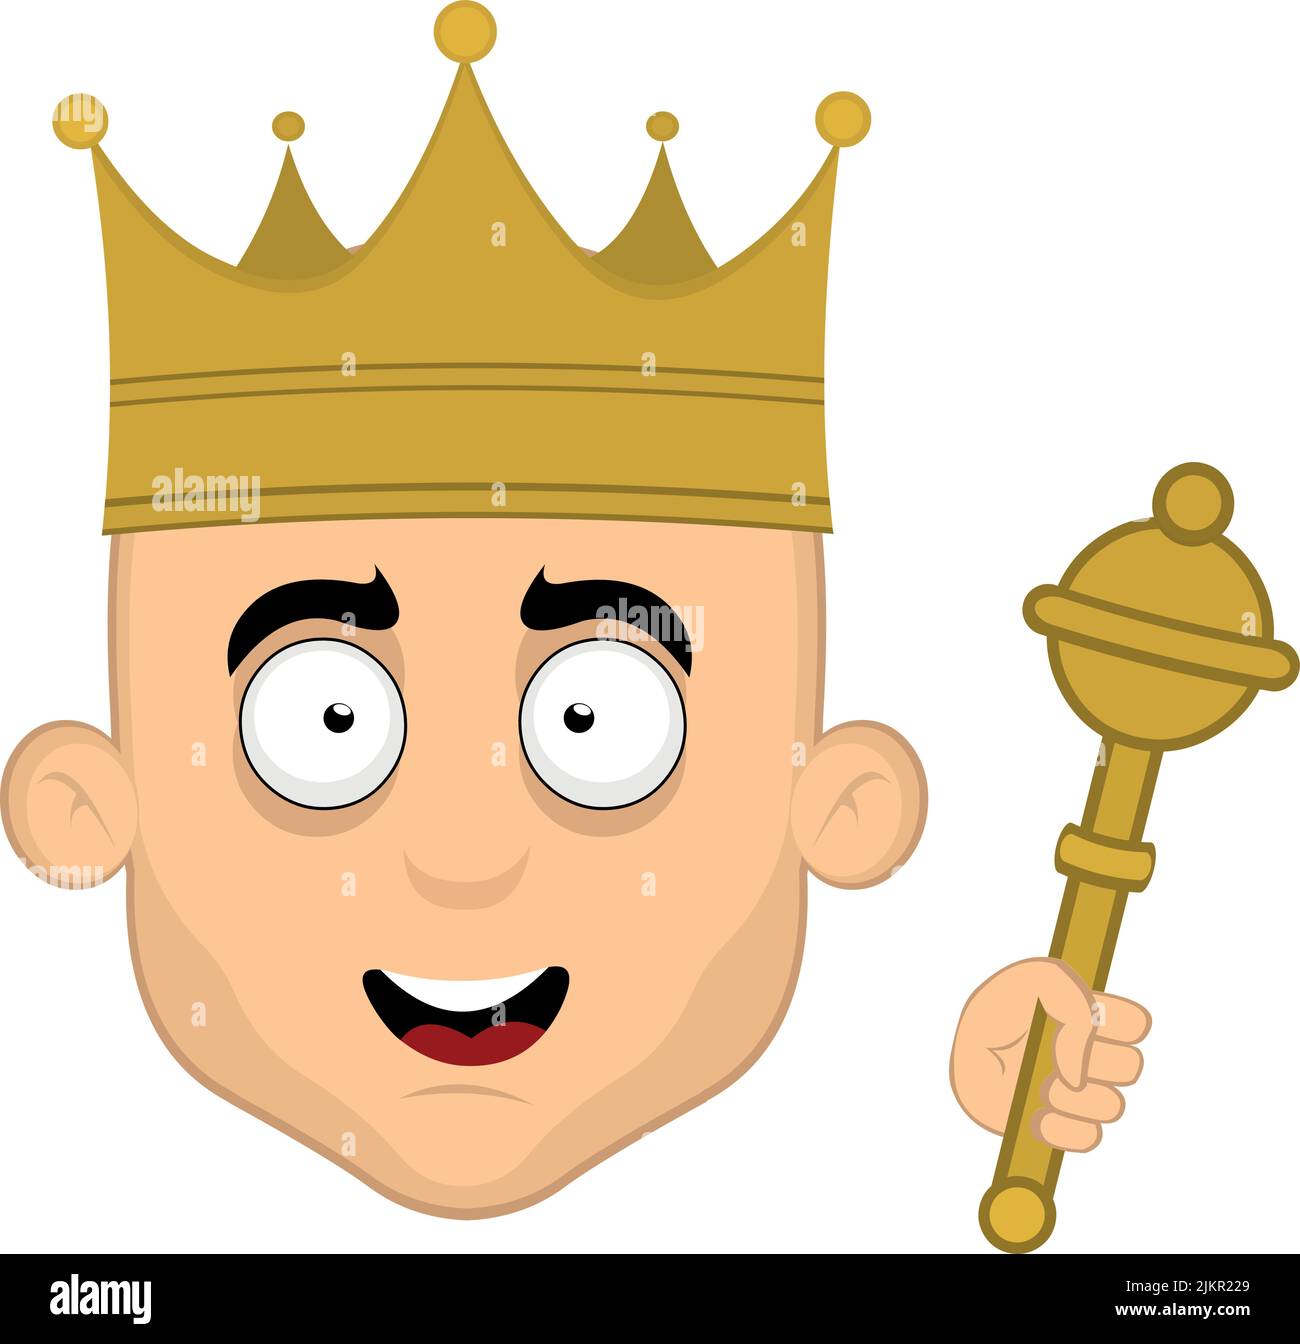 Illustration vectorielle de la face de la tête d'un roi de dessin animé avec sa couronne et son sceptre dans la main Illustration de Vecteur